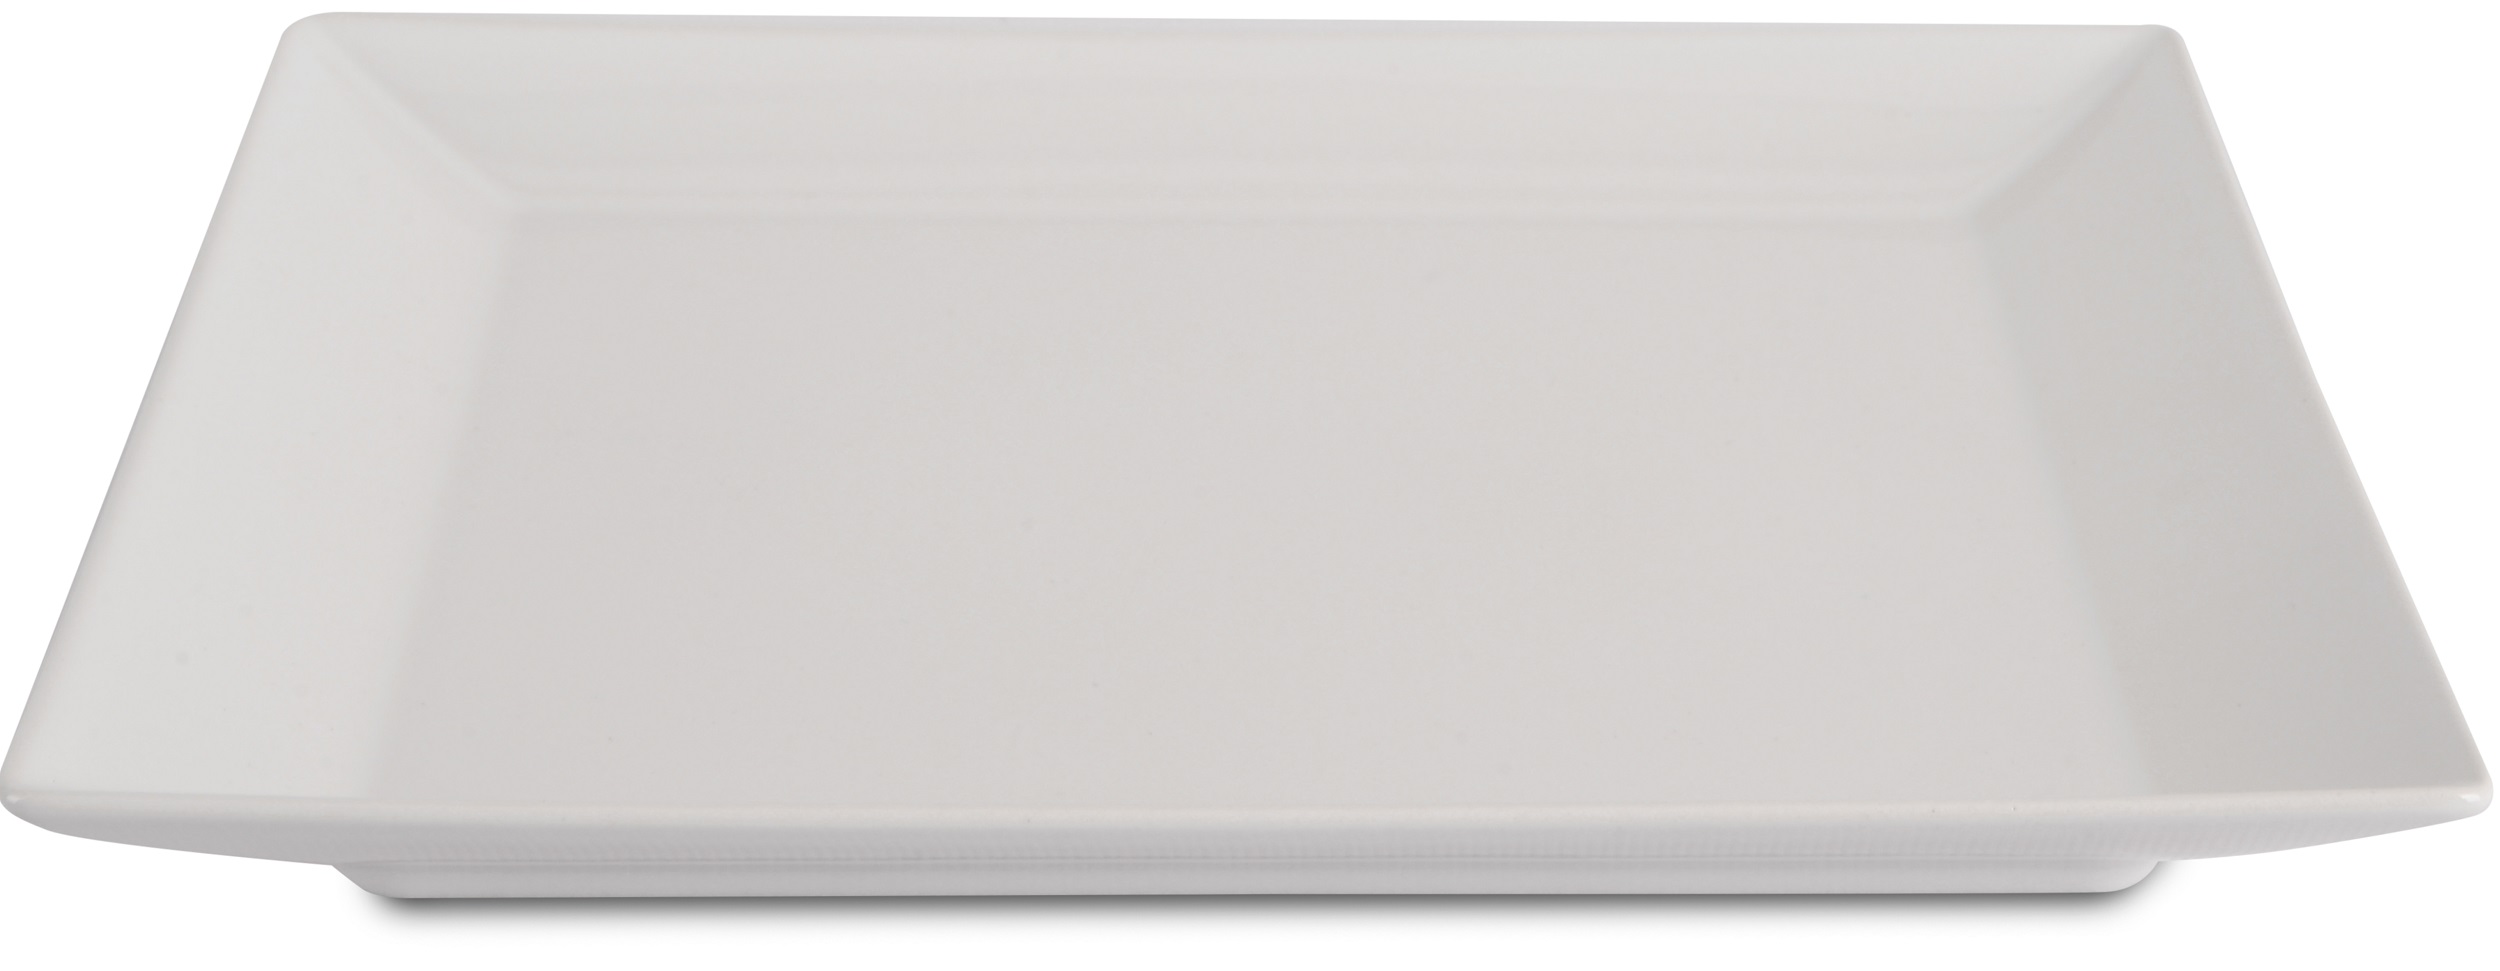 Тарелка квадратная белый глянец IPEC 30902843 TOKYO 26 см